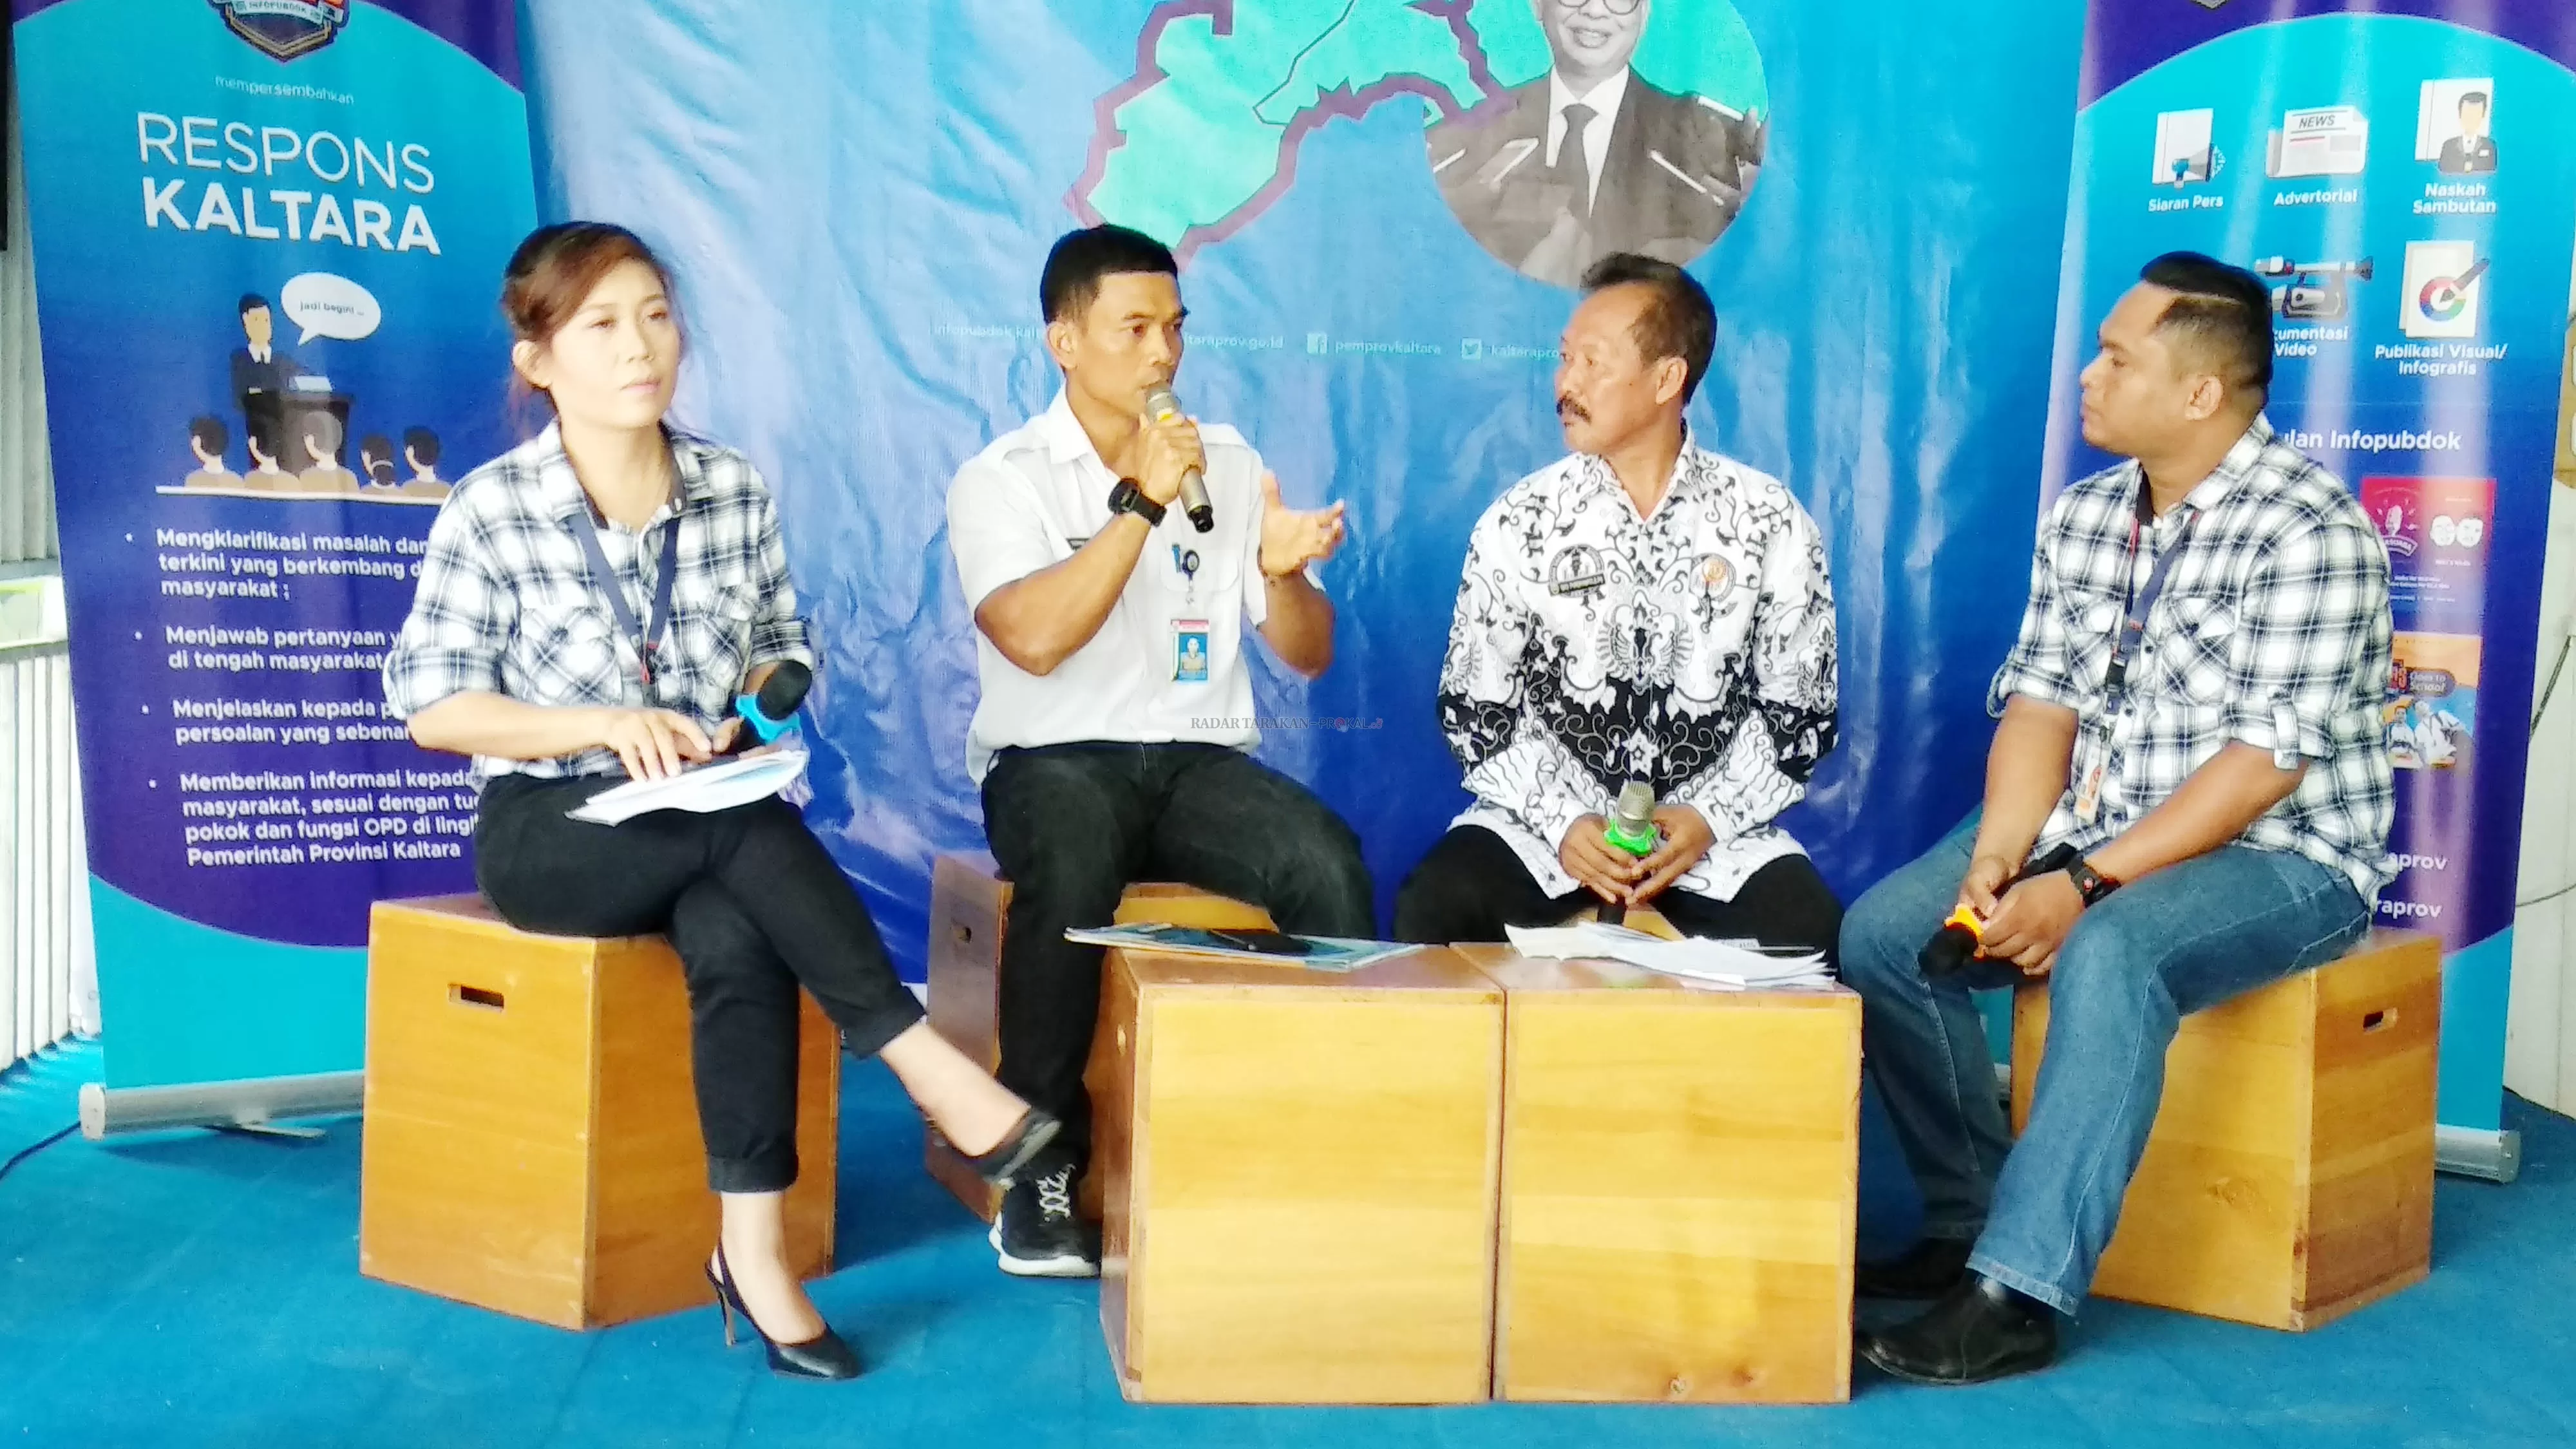 BANKEU:Plt Kepala BPKAD Kaltara, Denny Harianto (dua dari kiri) saat menjadi narasumber pada acara Respons Kaltara di Tanjung Selor, Rabu (29/1).